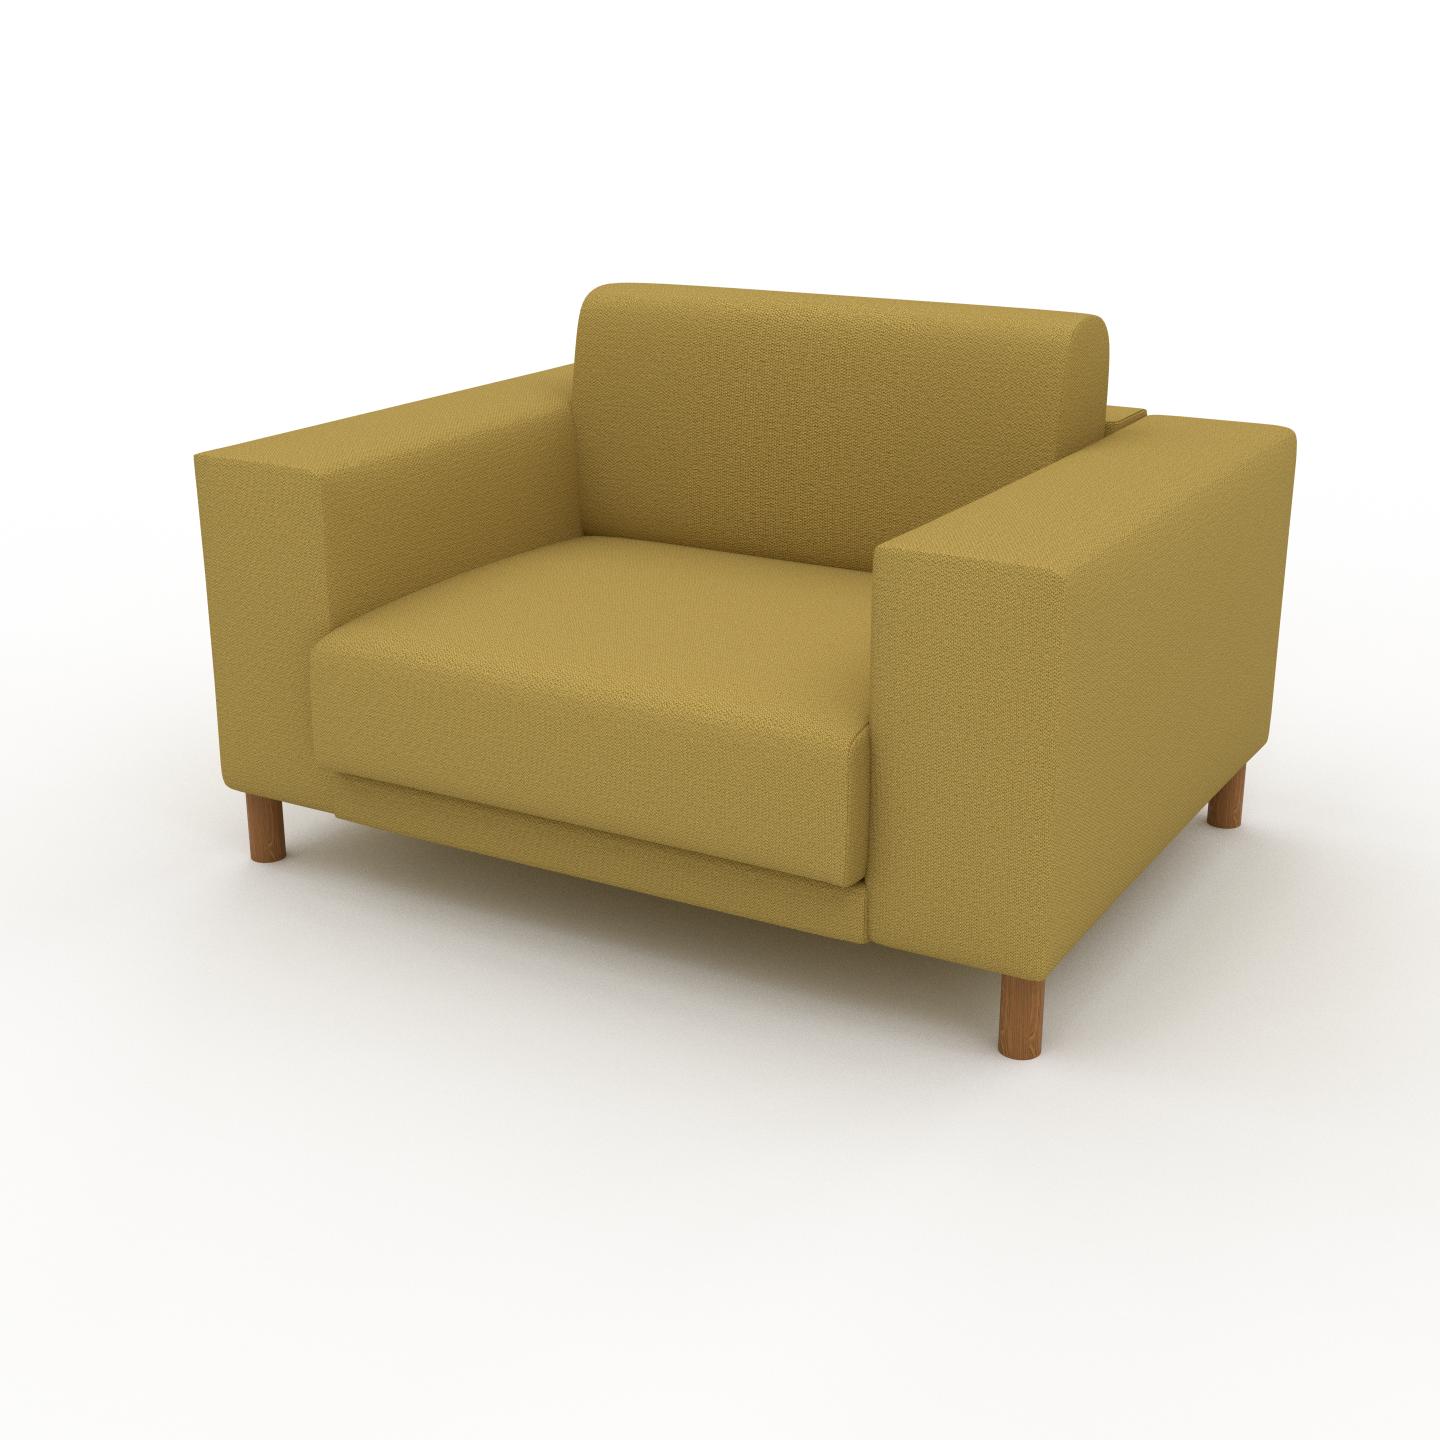 MYCS Sessel Senfgelb - Eleganter Sessel: Hochwertige Qualität, einzigartiges Design - 128 x 75 x 98 cm, Individuell konfigurierbar